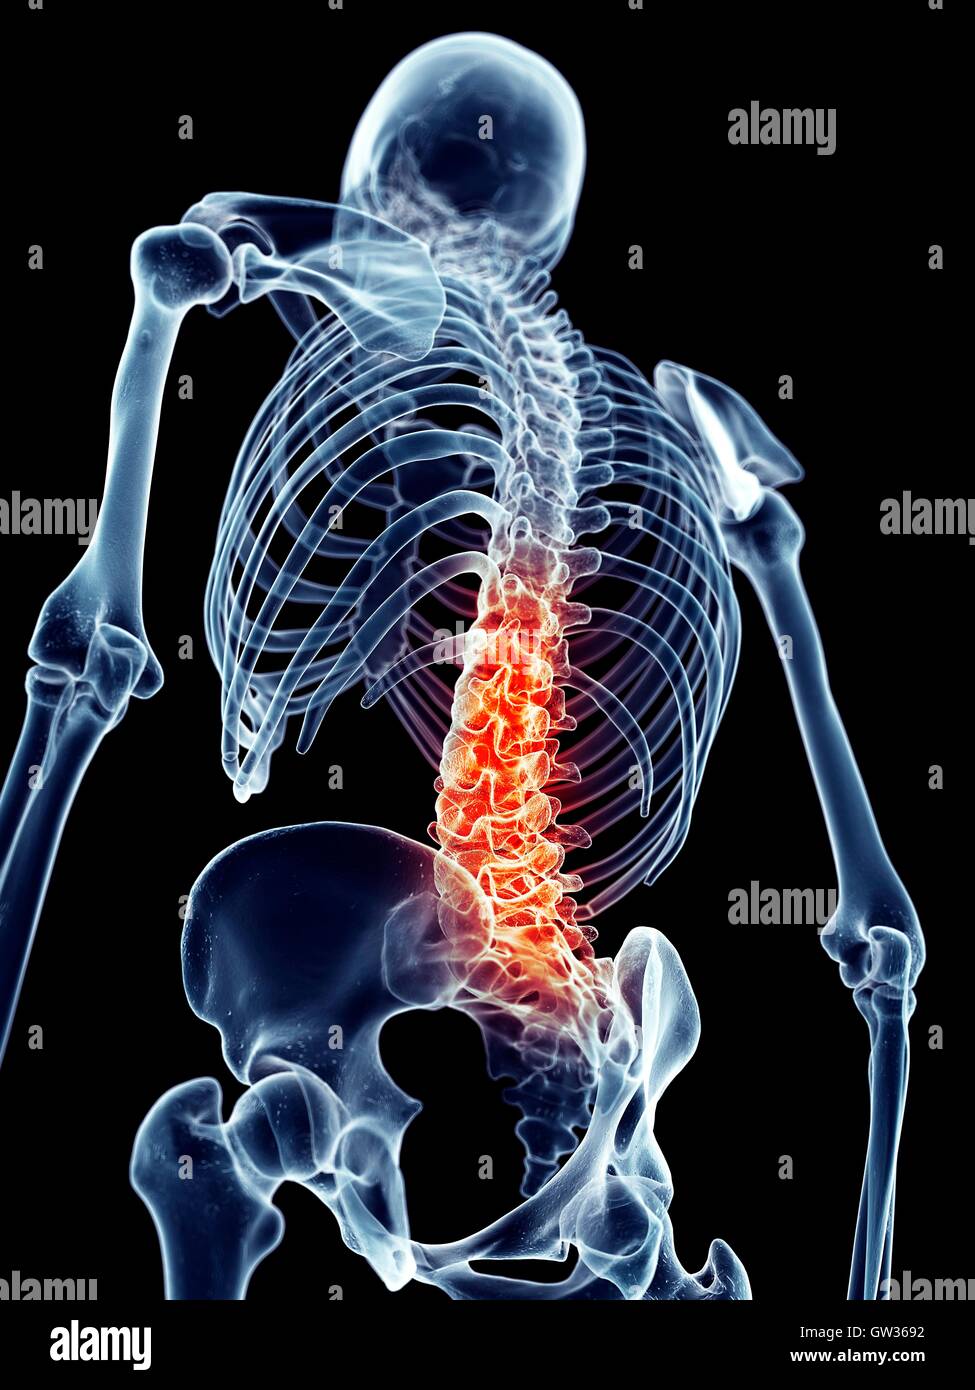 Human spine pain, illustration. Stock Photo